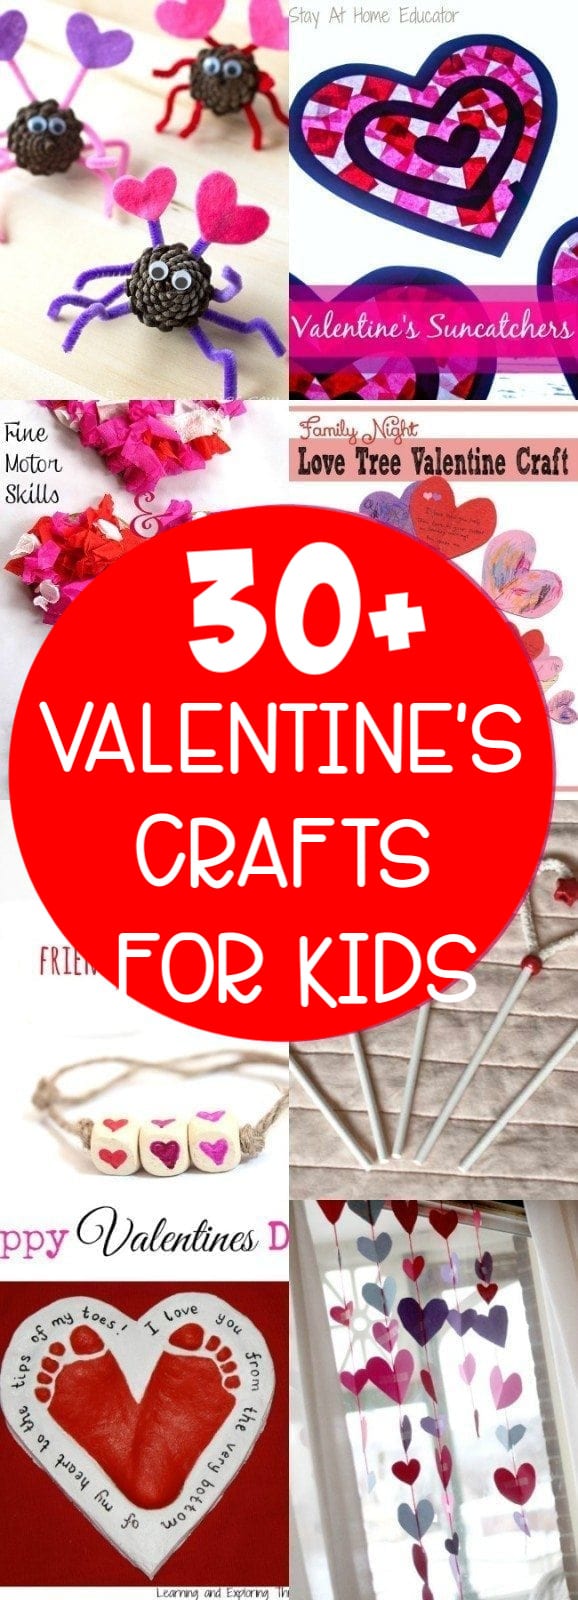 kids valentines crafts